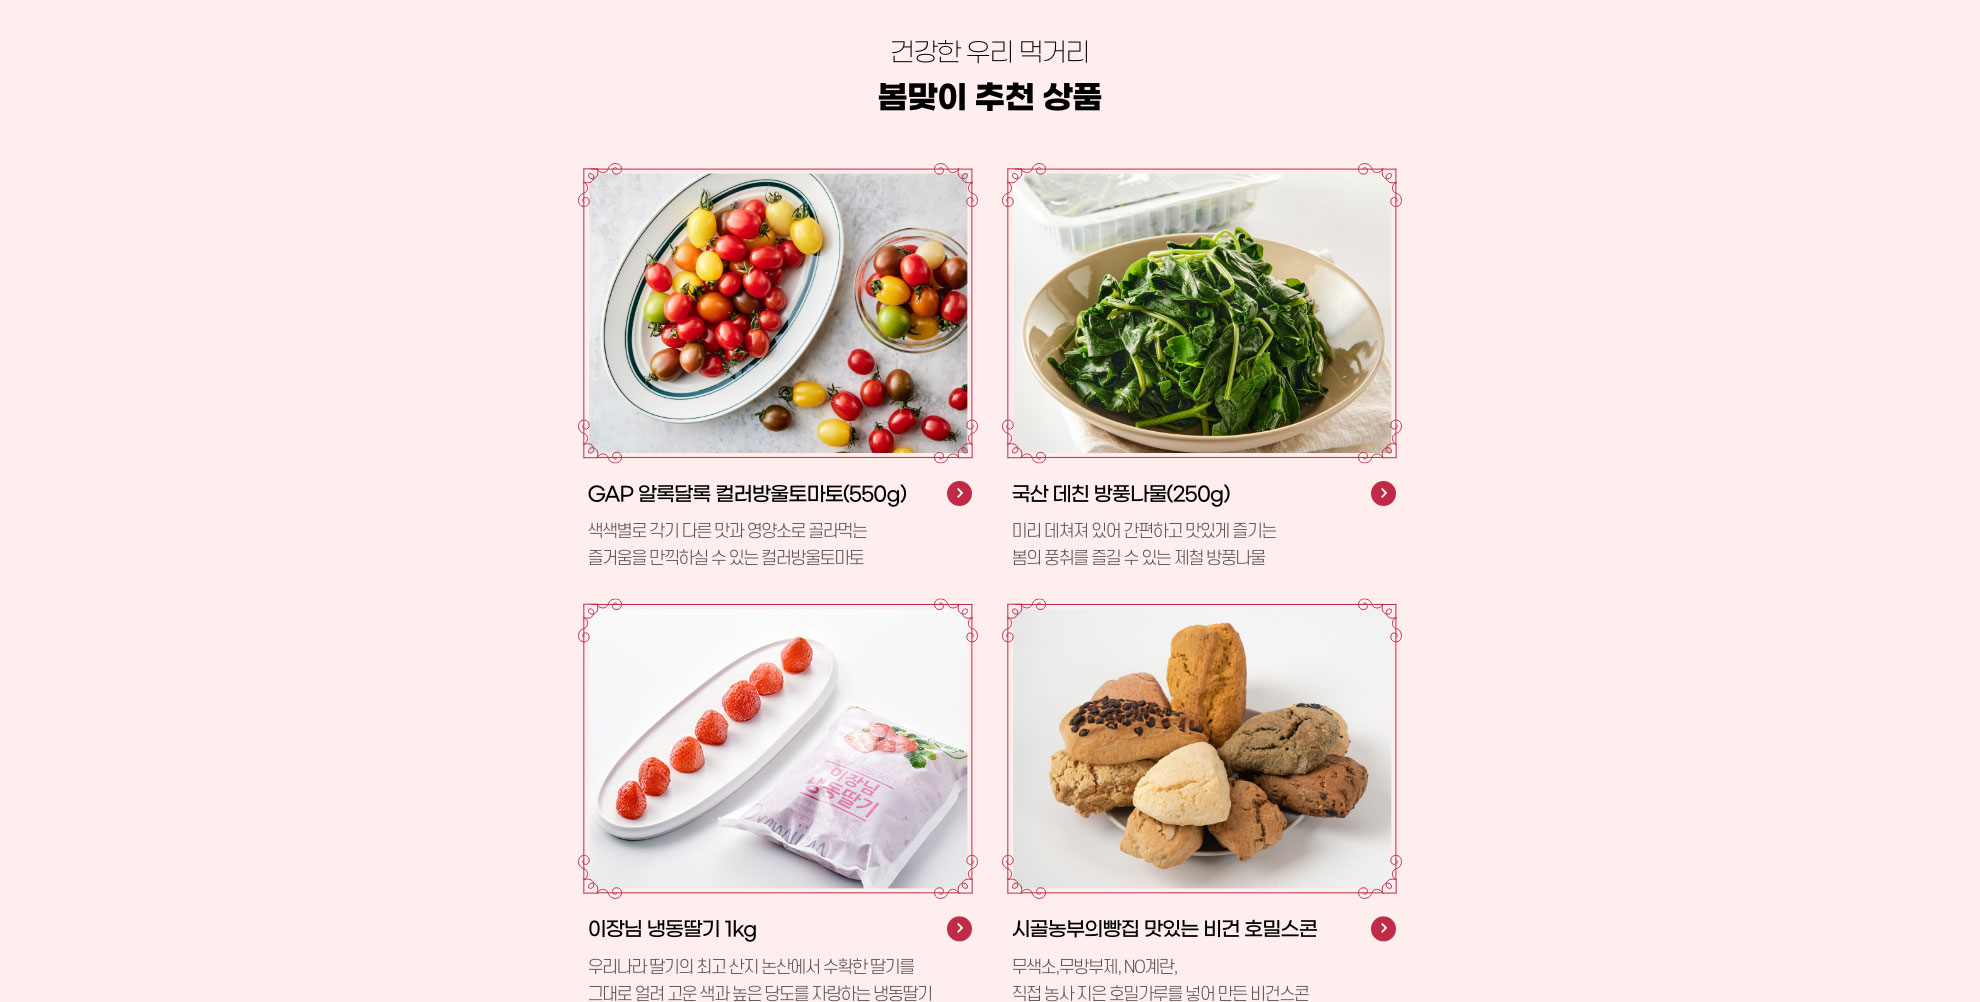 다양한 달콤함 - 티바인 상품 추천